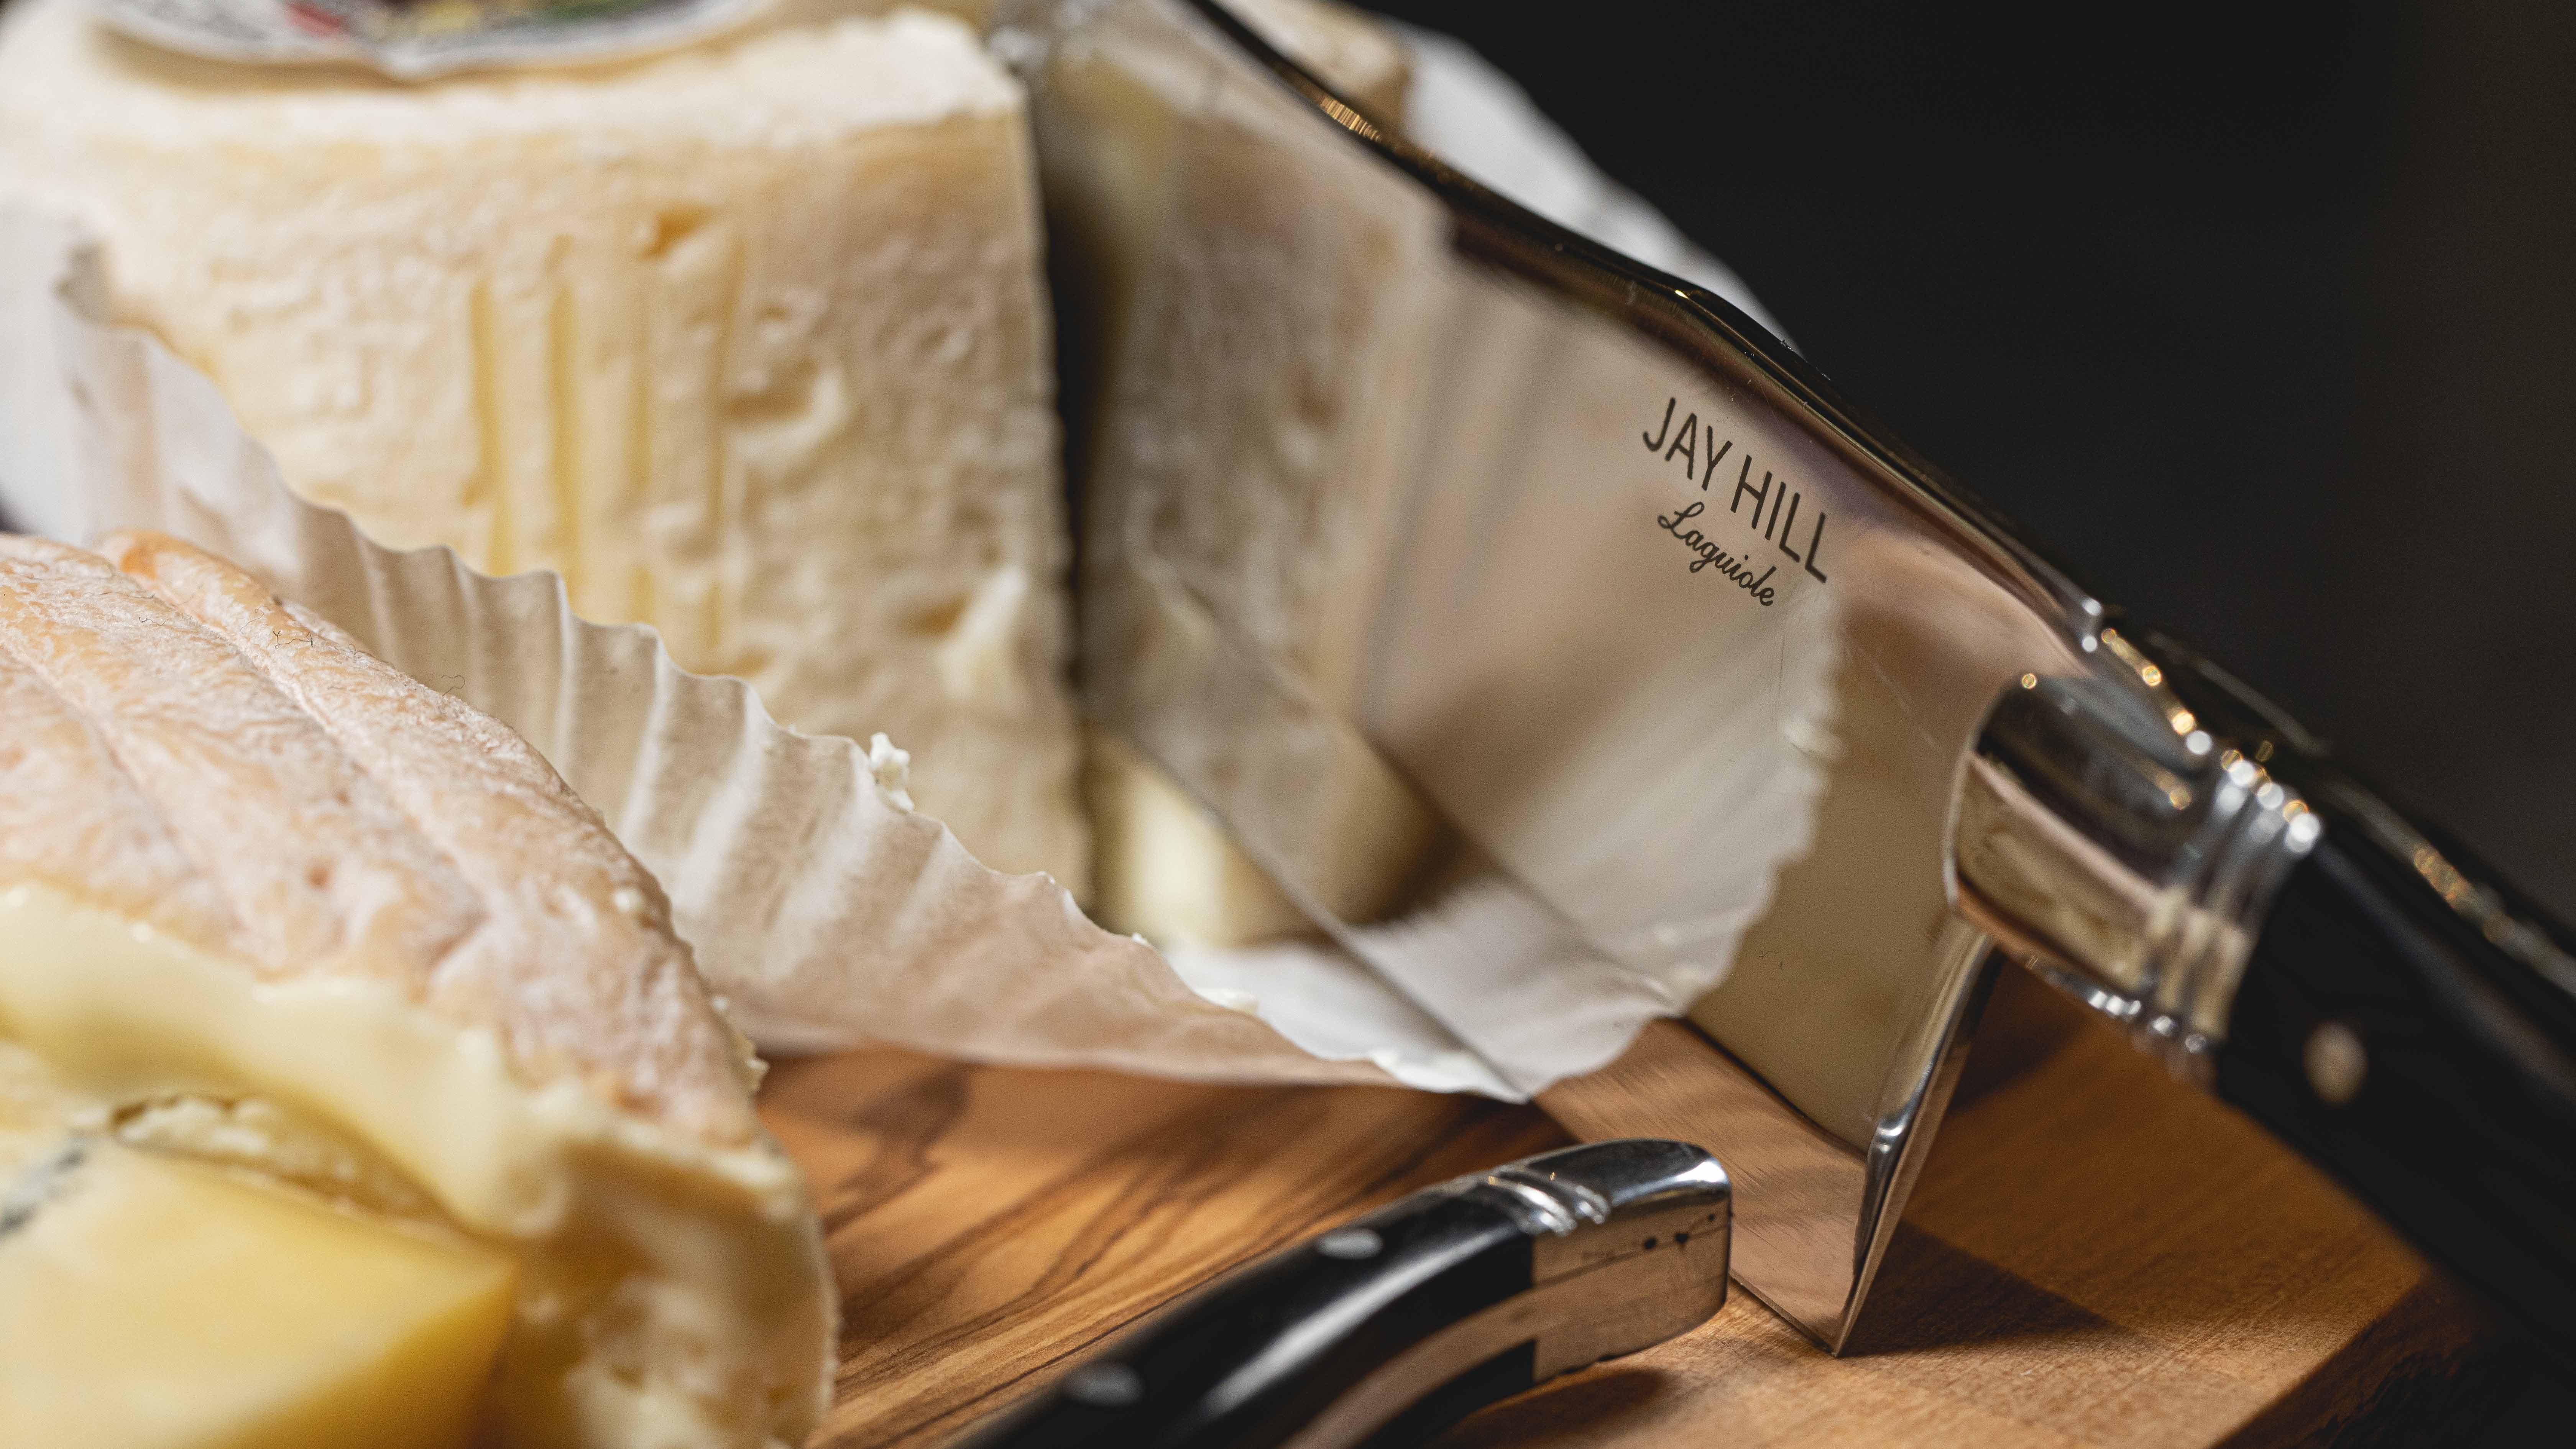 Lamina Cheese Knives – The Good Supply